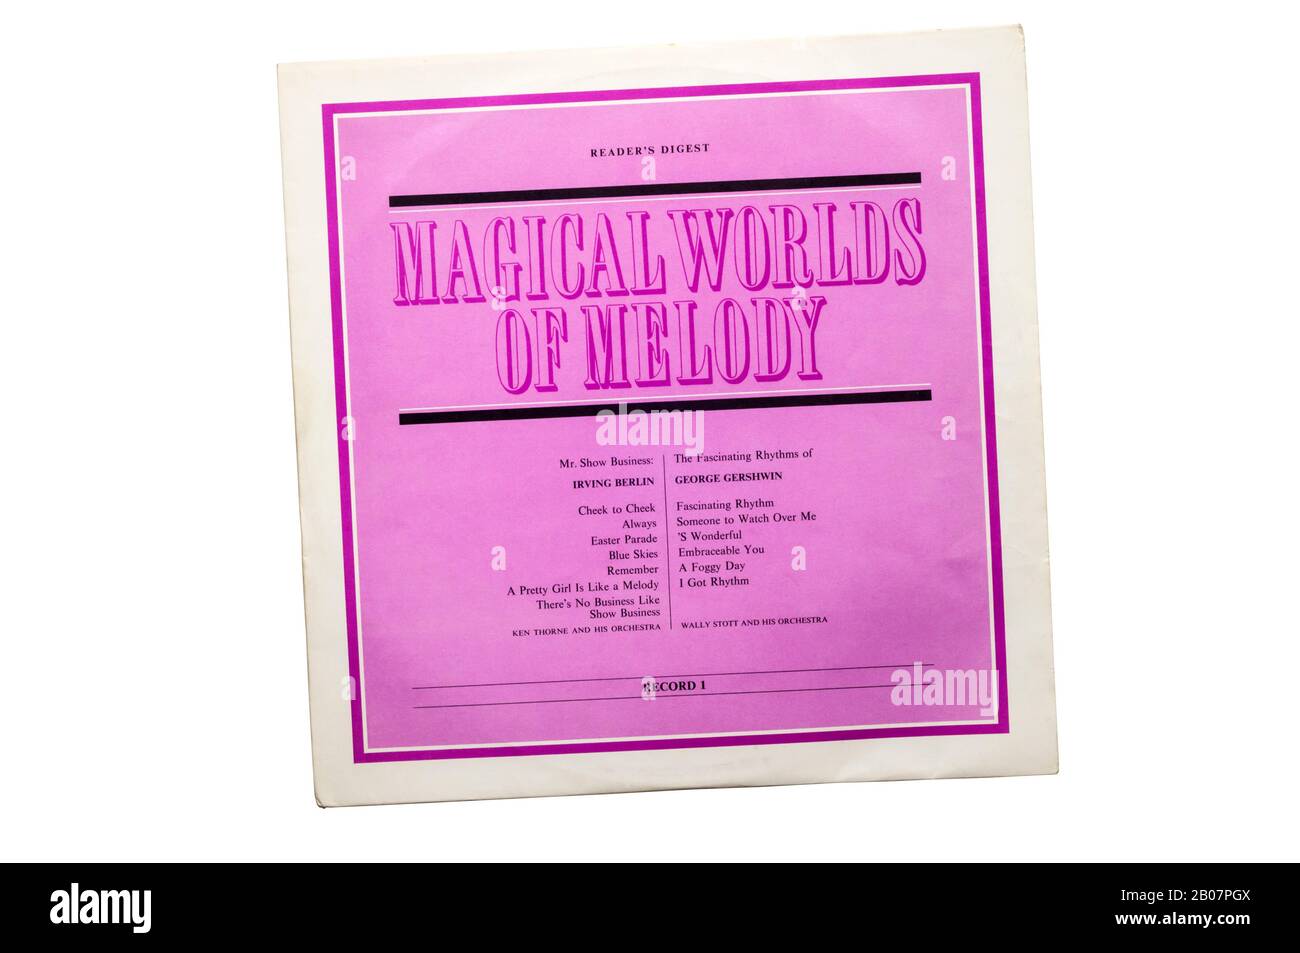 Magical Worlds of Melody è stato un set di 10 LP pubblicato Da Readers Digest nel 1963. Primo record in set in mostra con Irving Berlin e George Gershwin. Foto Stock